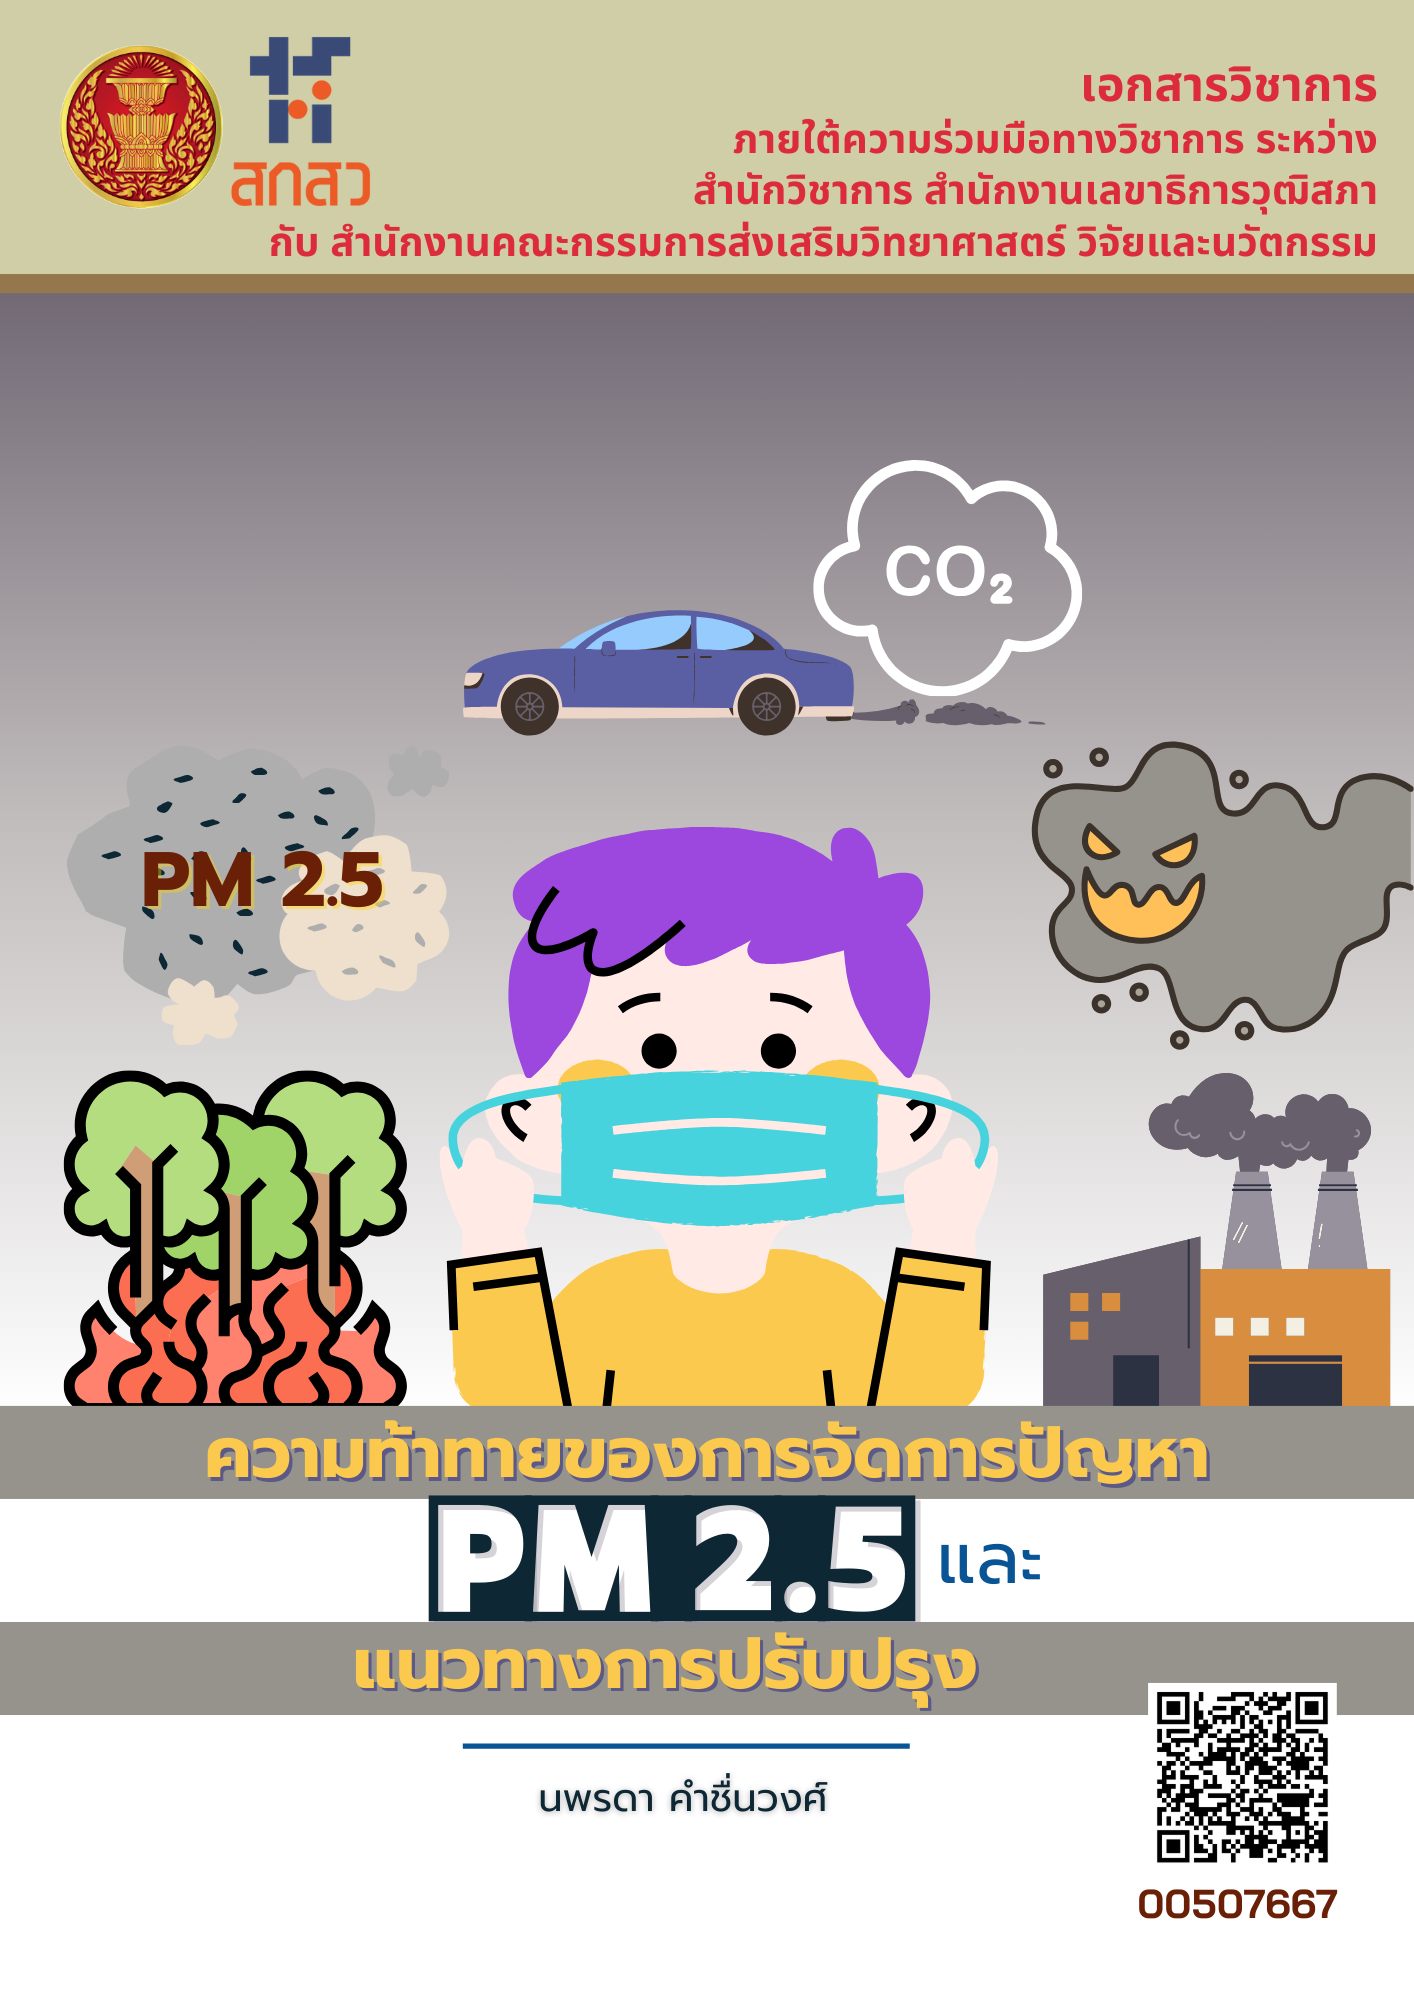 ความท้าทายของการจัดการปัญหา PM 2.5 และแนวทางการปรับปรุง 